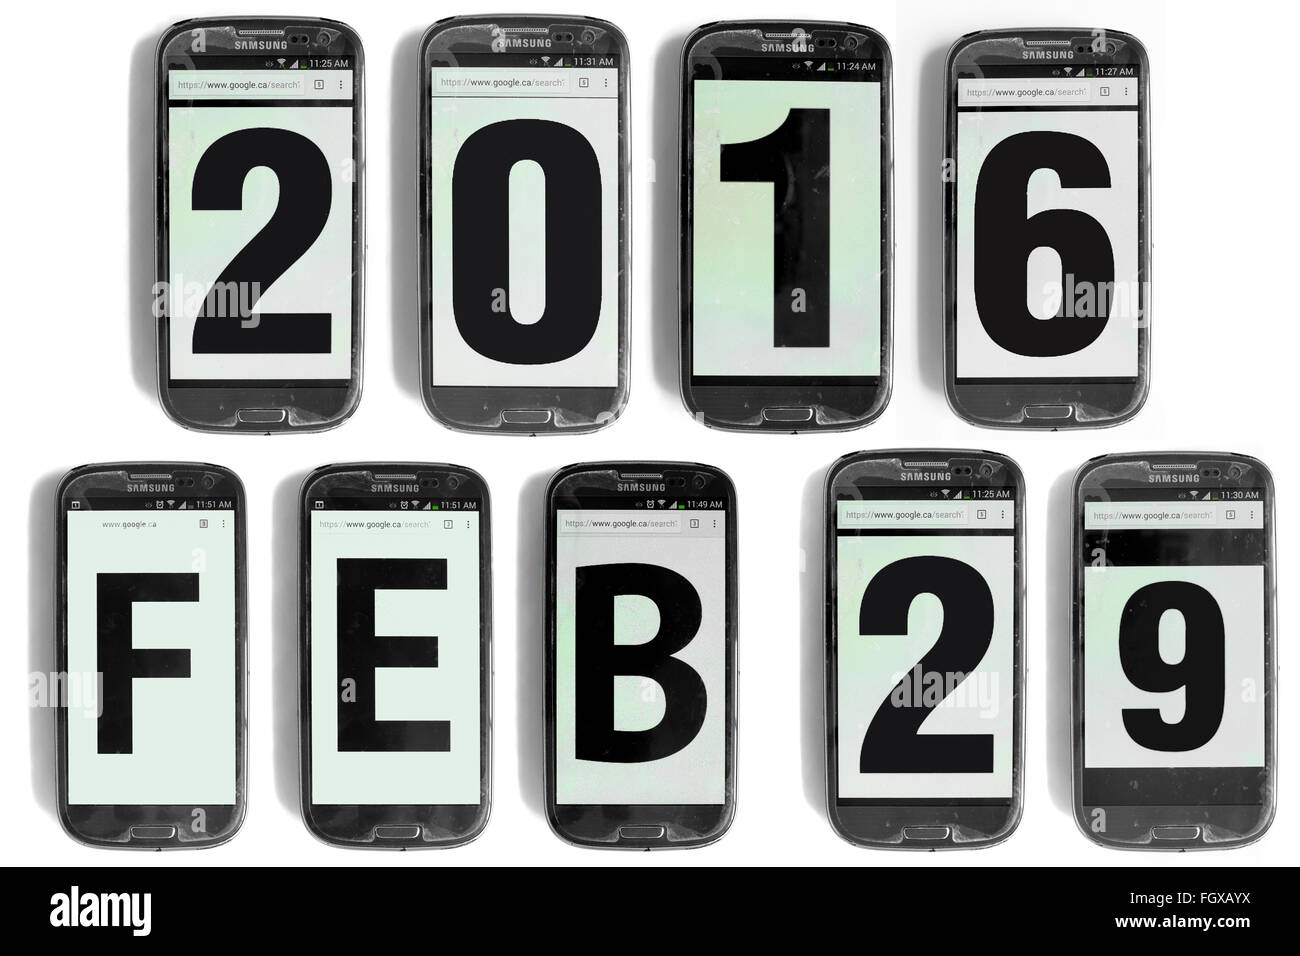 2016 29 Feb scritto su schermi di smartphone fotografati contro uno sfondo bianco. Foto Stock